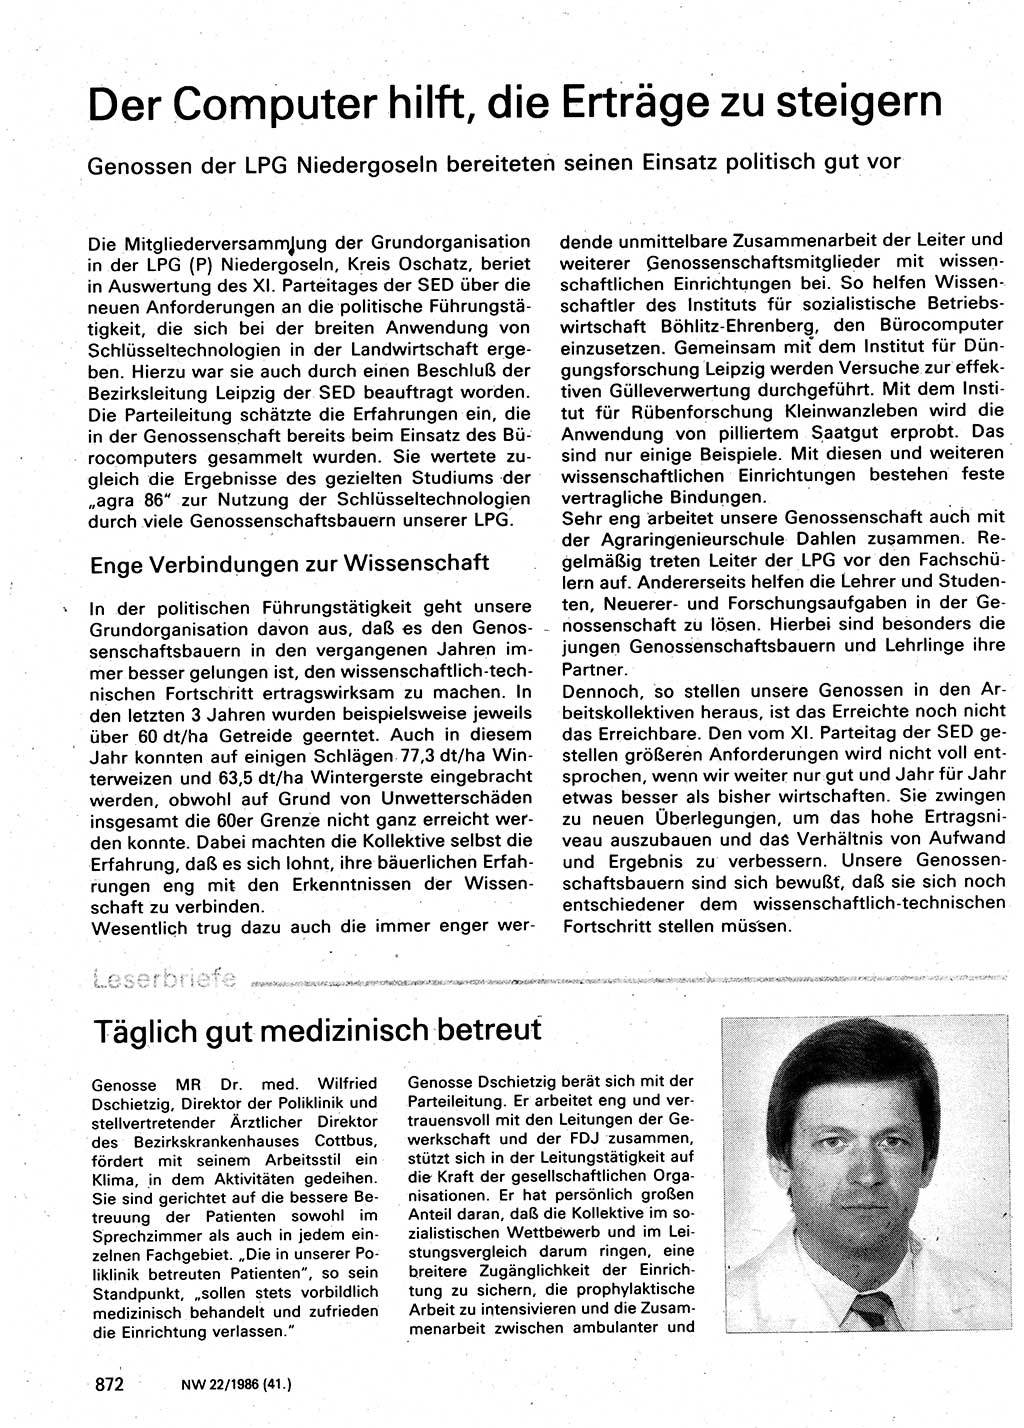 Neuer Weg (NW), Organ des Zentralkomitees (ZK) der SED (Sozialistische Einheitspartei Deutschlands) für Fragen des Parteilebens, 41. Jahrgang [Deutsche Demokratische Republik (DDR)] 1986, Seite 872 (NW ZK SED DDR 1986, S. 872)